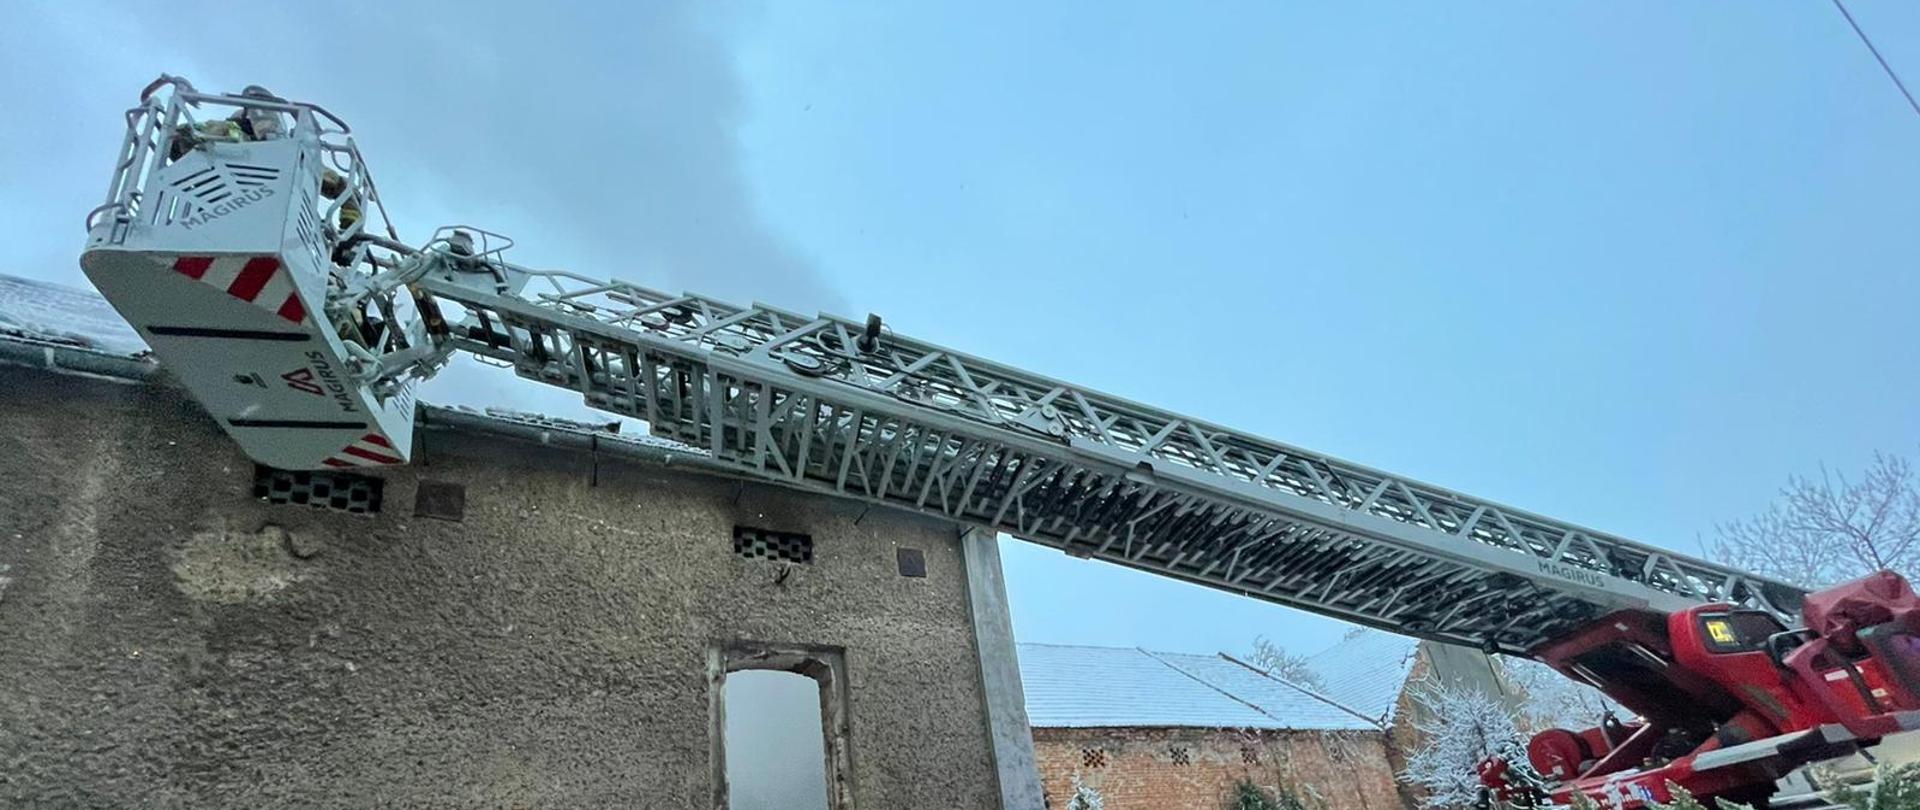 Zdjęcie przedstawia budynek gospodarczy podczas pożaru. Przy elewacji budynku widoczny kosz ratowniczy drabiny mechanicznej podczas działań gaśniczych a w prawej części kadru widoczna reszta drabiny mechanicznej. Powyżej dachu budynku widoczny szary dym z pożaru.